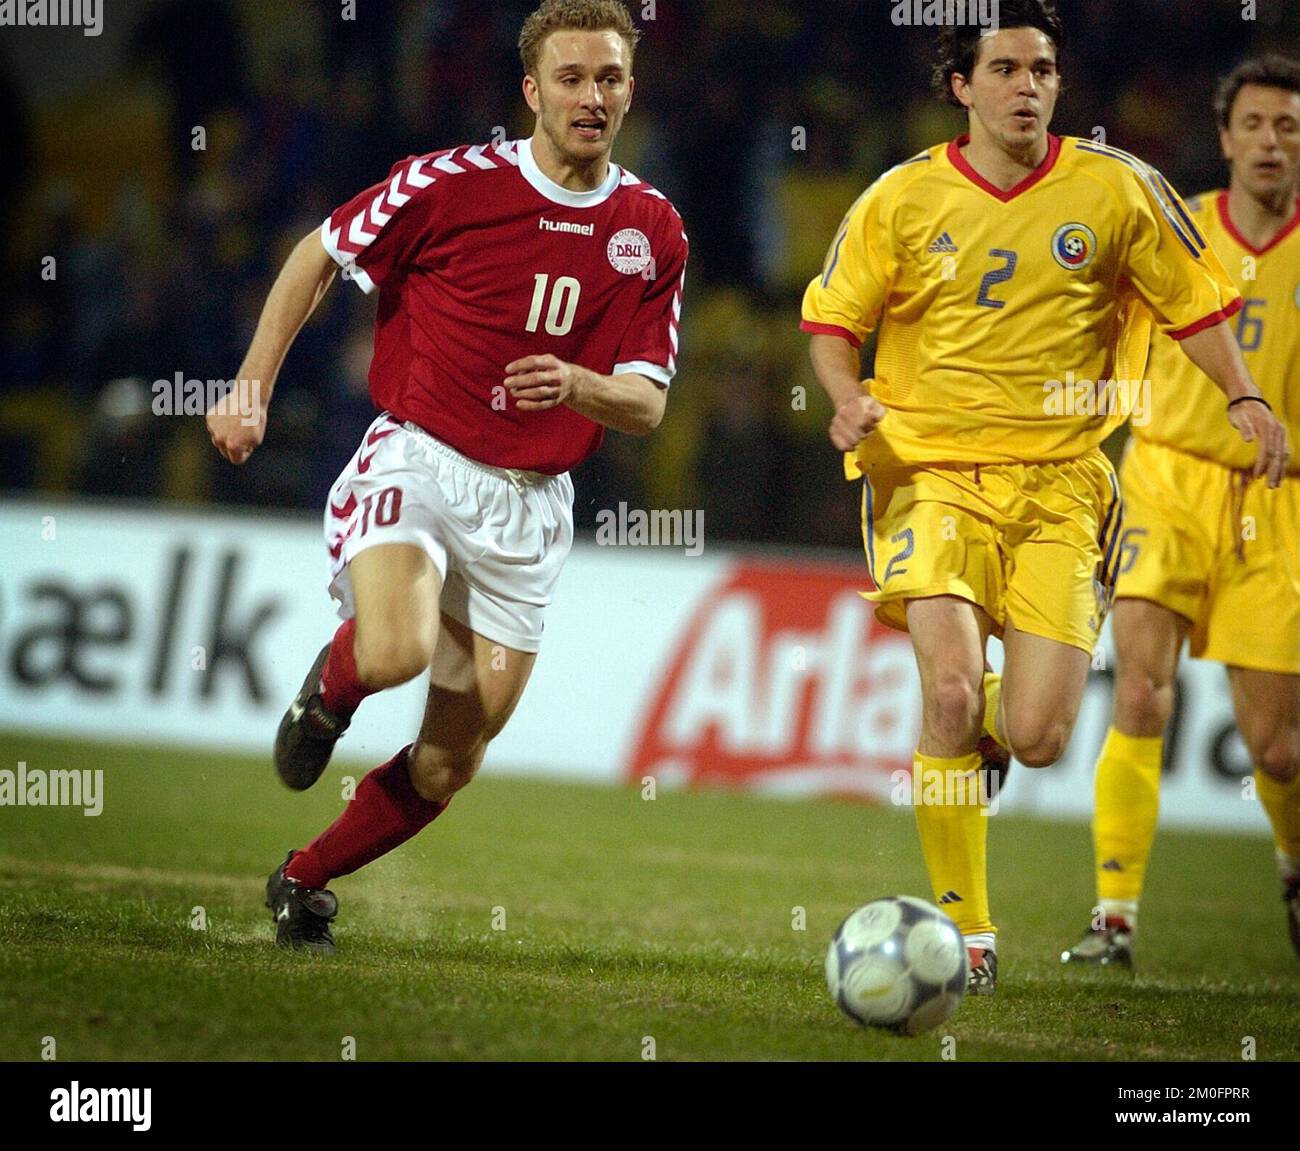 Il giocatore danese Dennis Rommedahl del PSV Eindhoven in azione durante la partita di qualificazione Euro 2004 contro la Romania. La Danimarca ha vinto la partita 5-2. ROMMEDAHL ha segnato due volte. Foto Stock